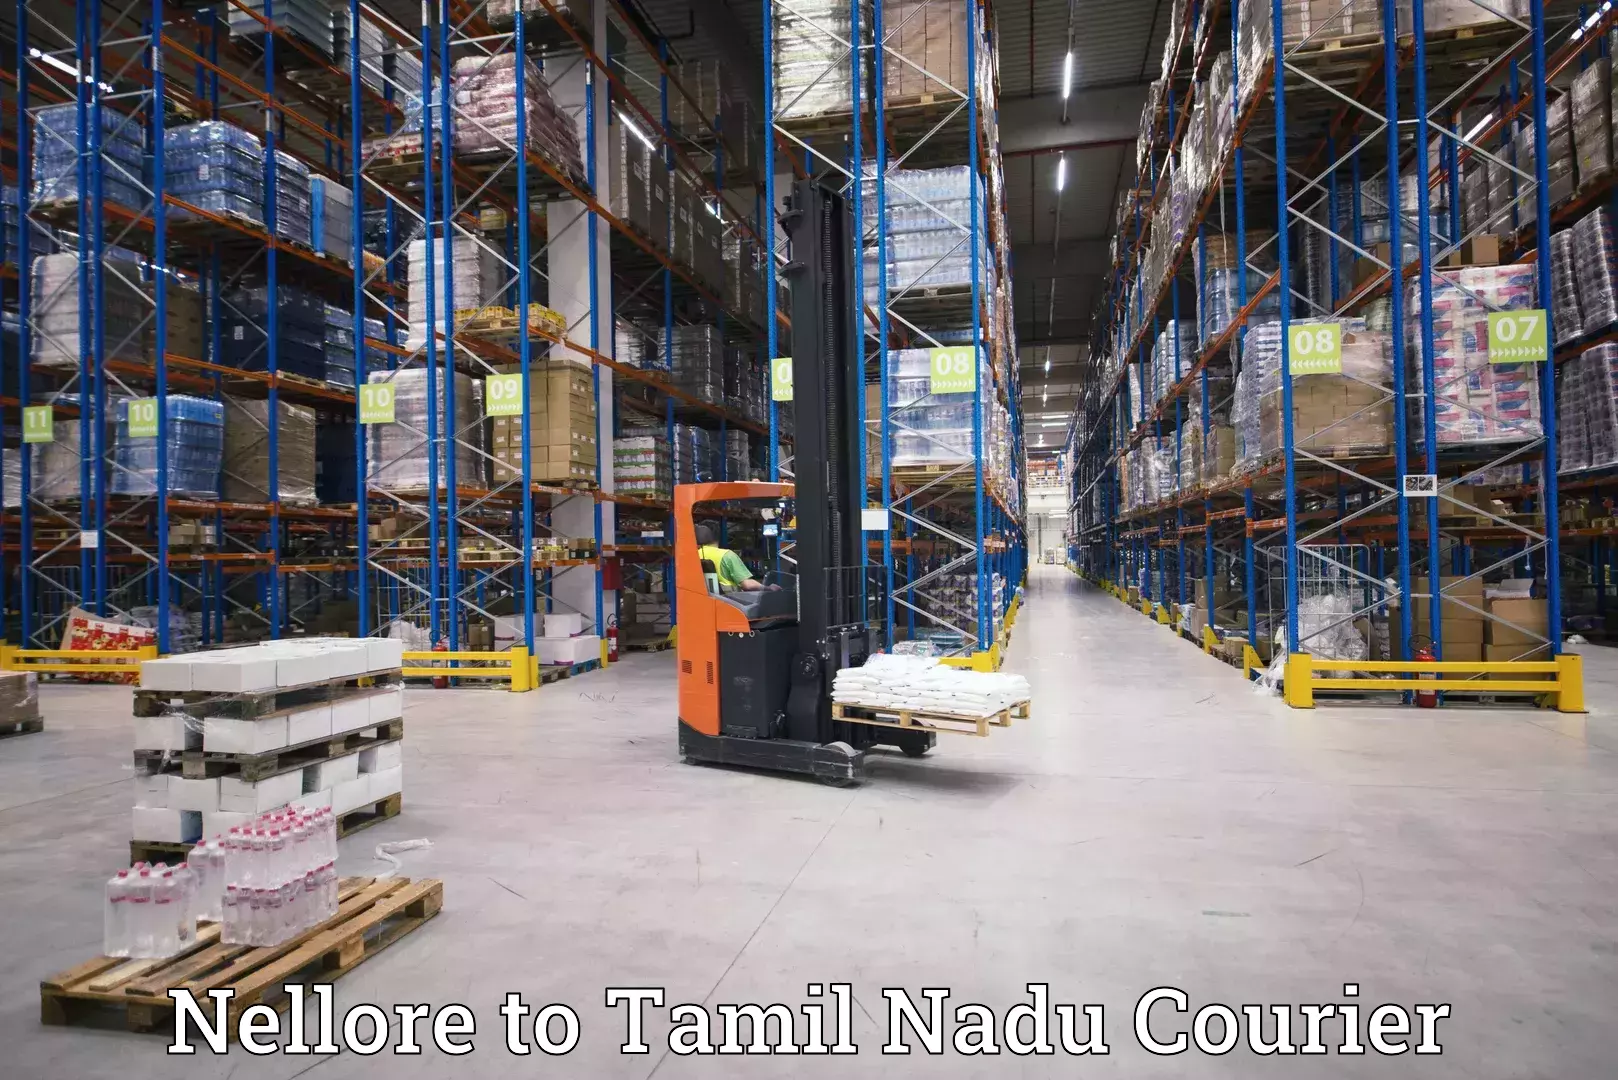 Global logistics network Nellore to Viluppuram